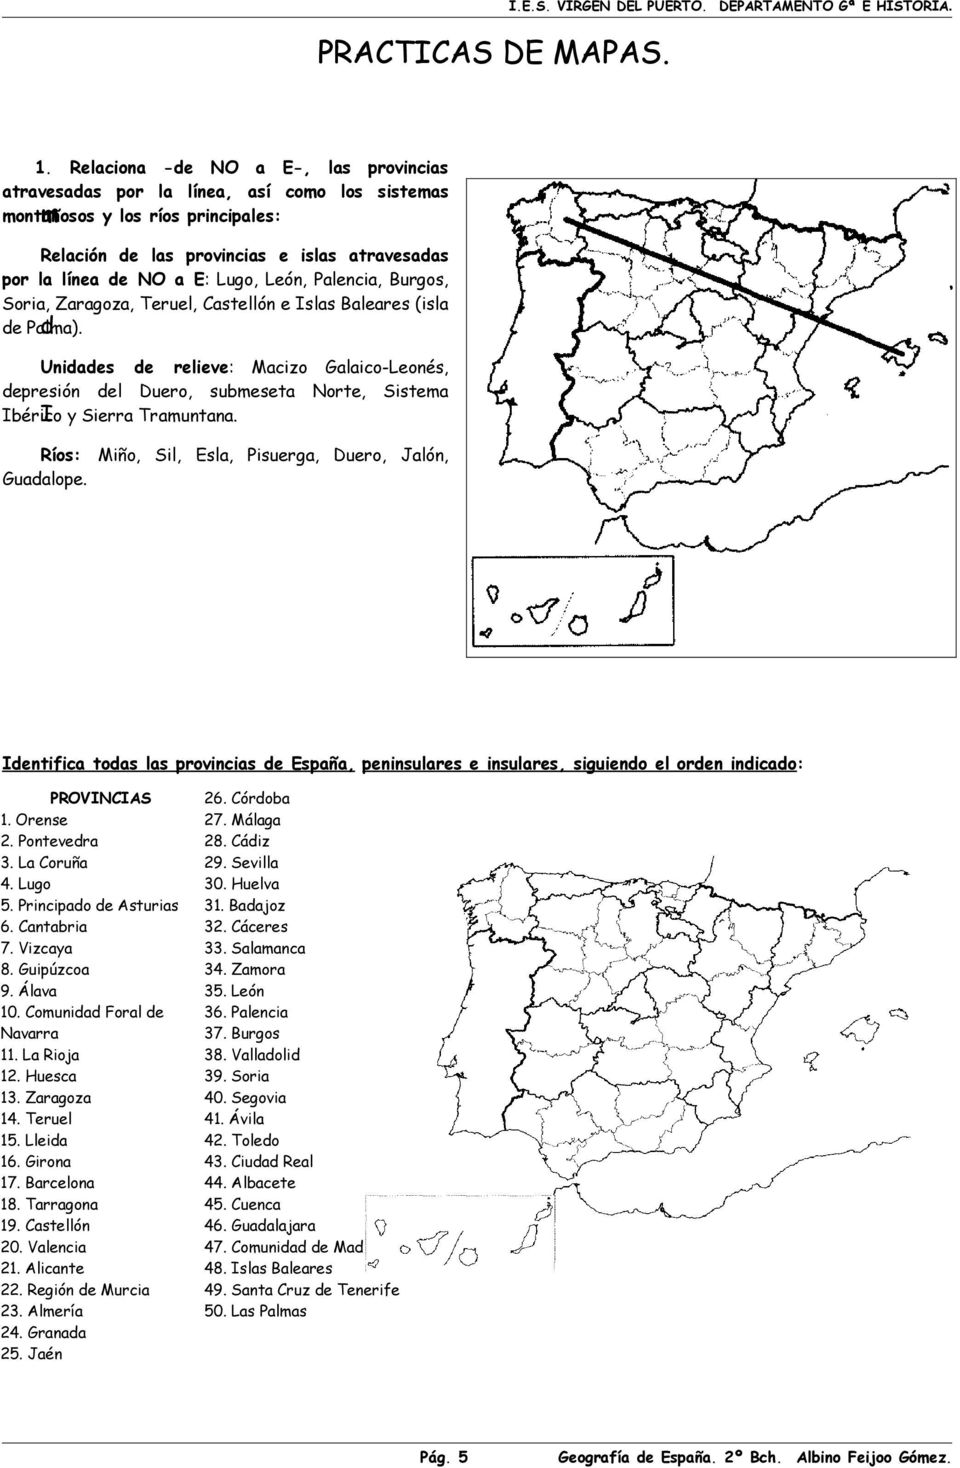 León, Palencia, Burgos, Soria, Zaragoza, Teruel, Castellón e Islas Baleares (isla de Palma).